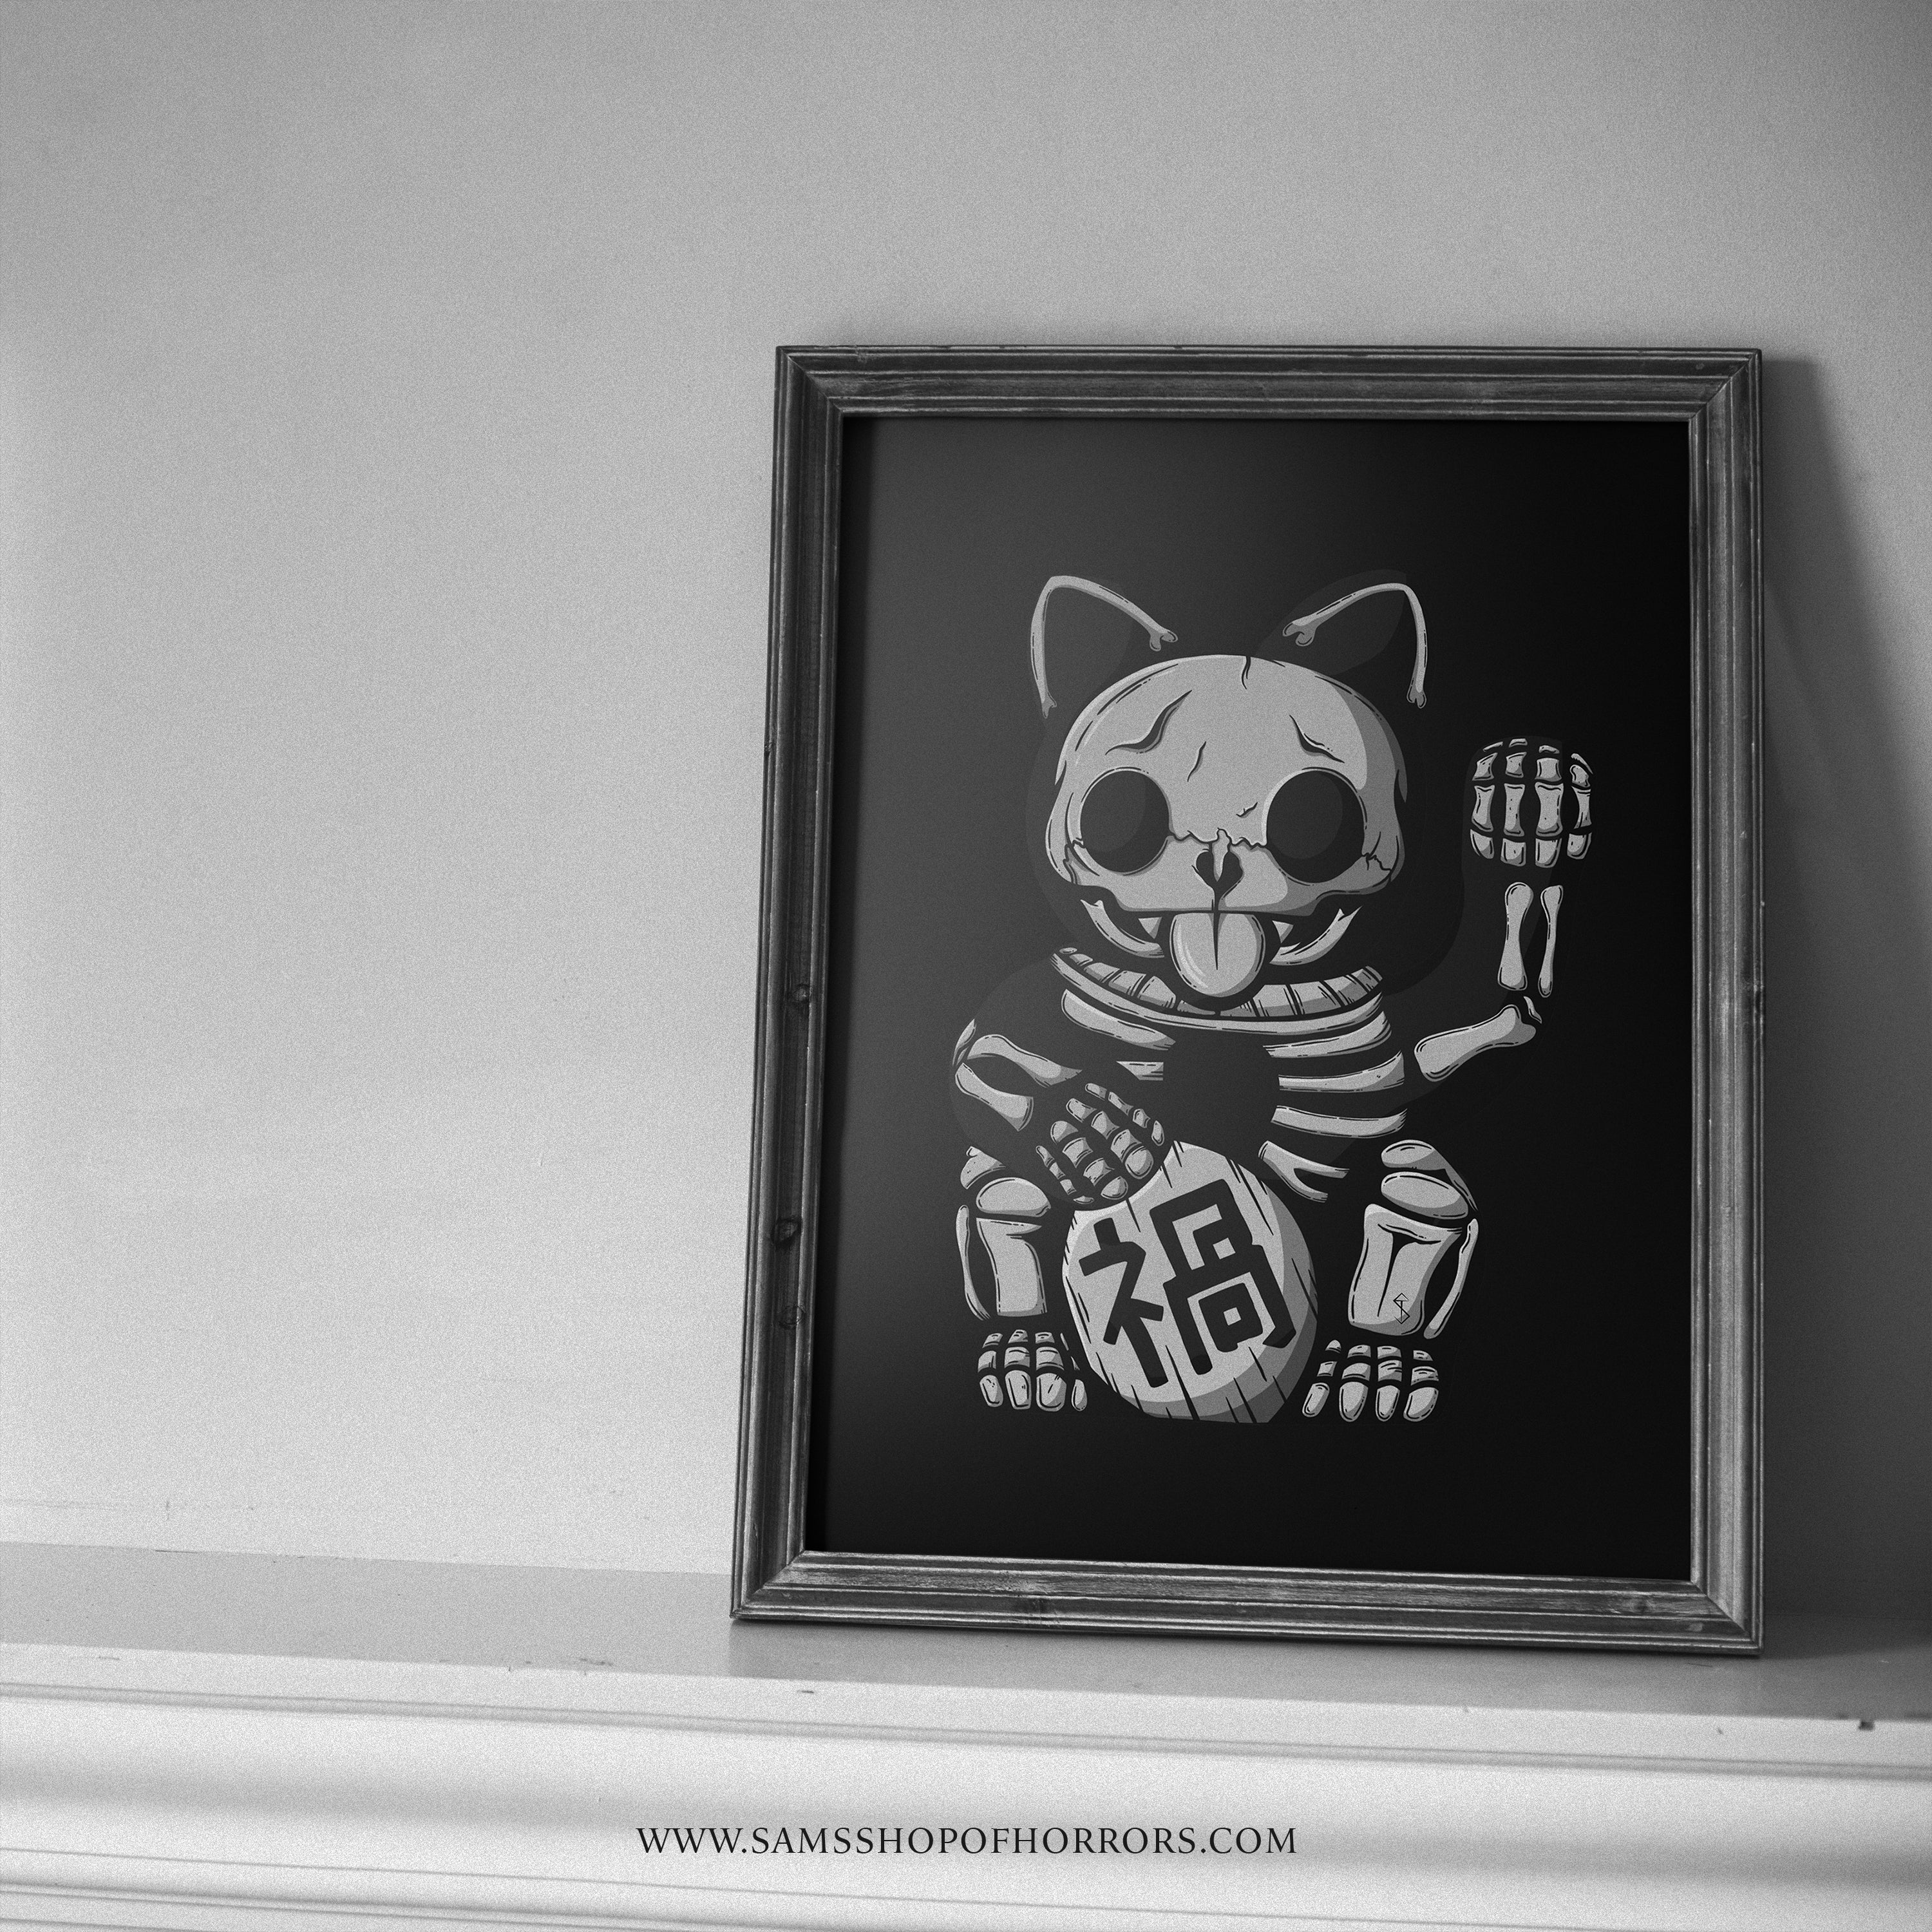 Cat skull by me(Jane) at Baron art tattoo studio in LB, CA : r/tattoos